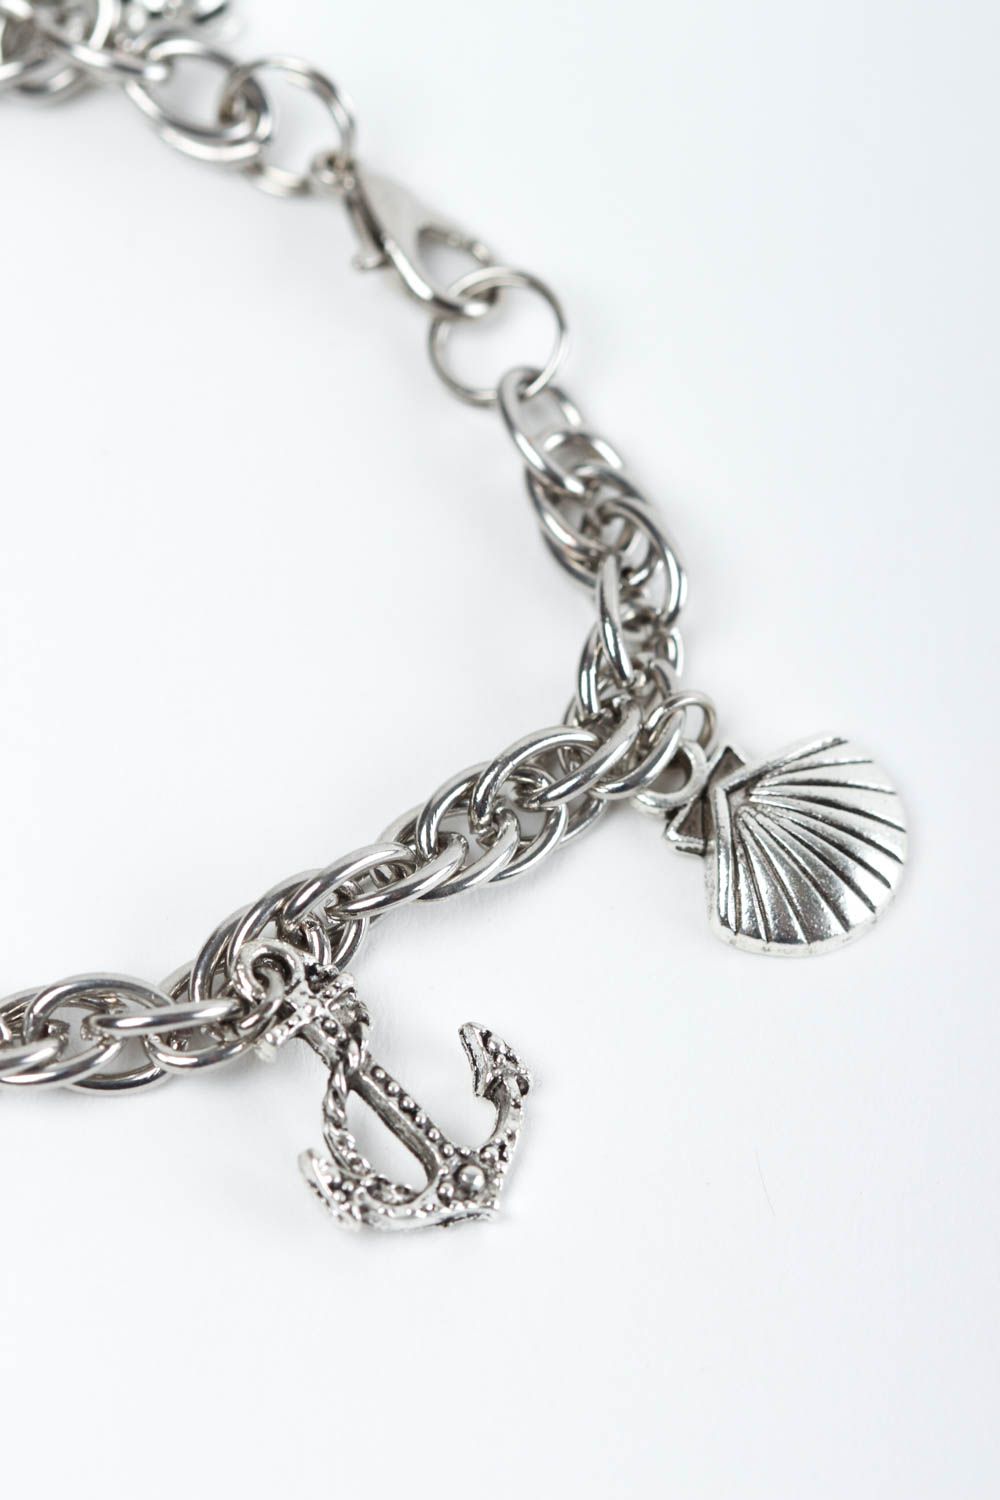 Handmade bracelet designer bracelet with charms unusual gift for women photo 3